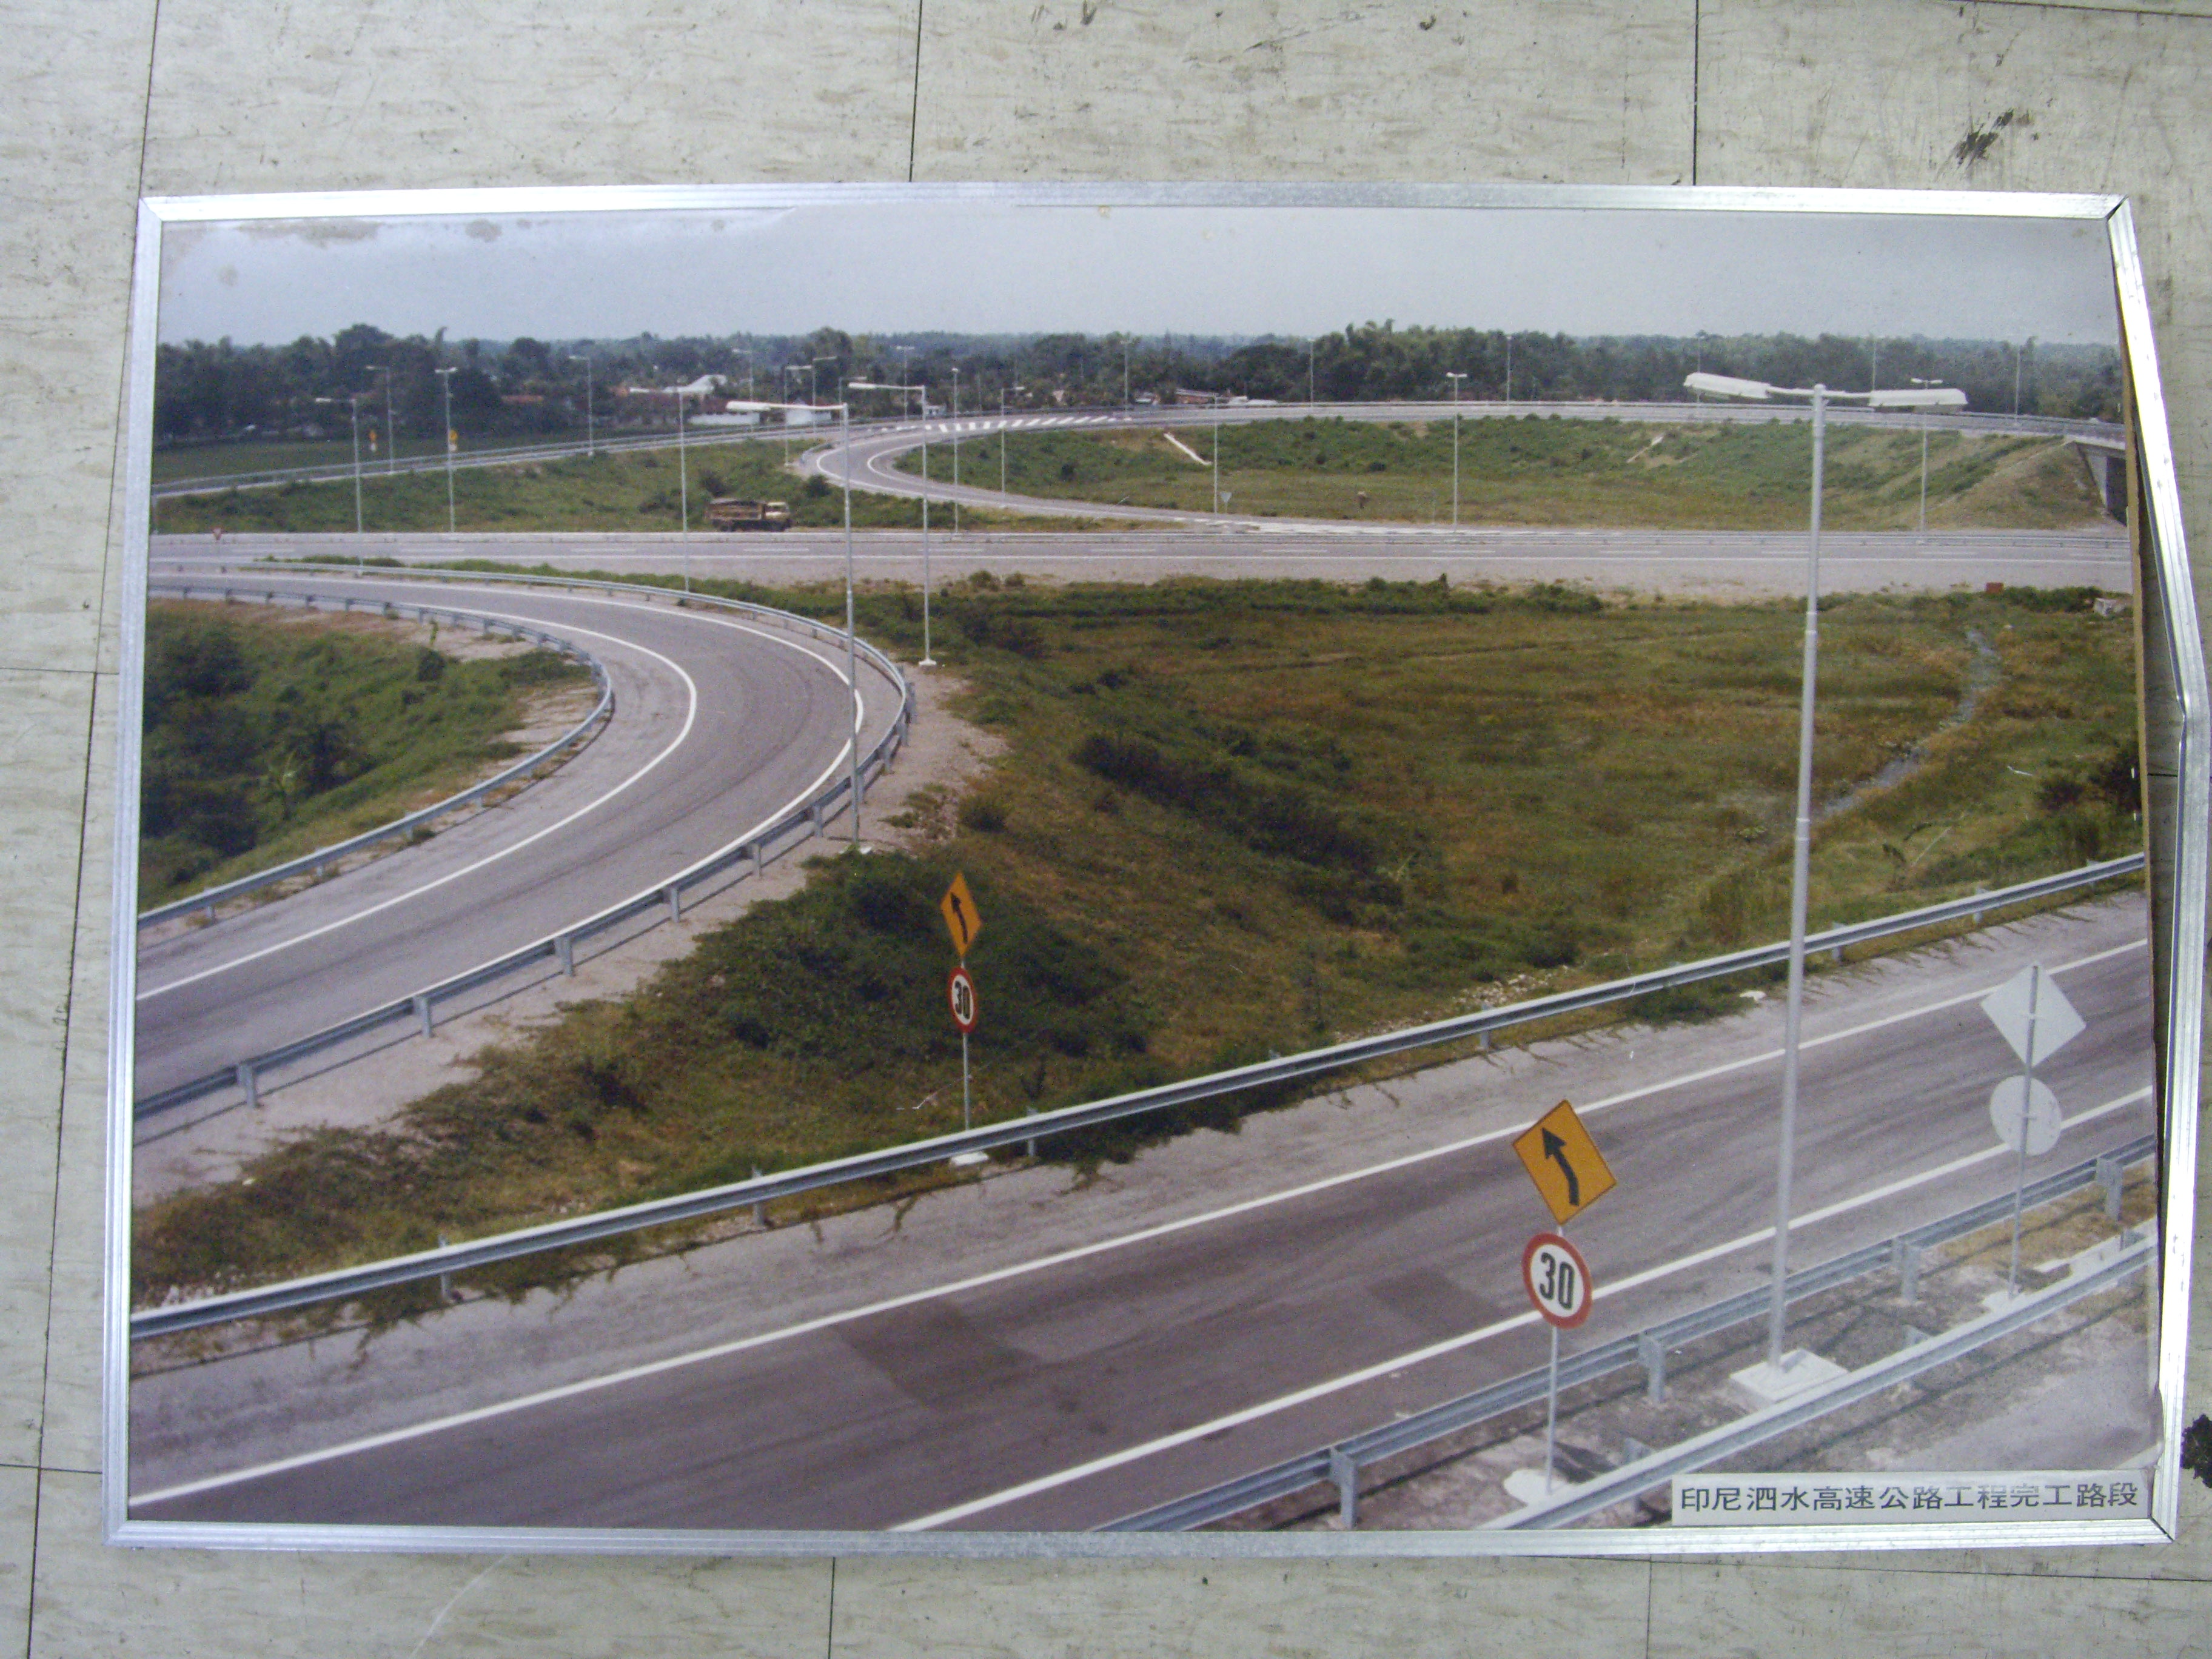 印尼泗水高速公路工程完工路段(裱框照)